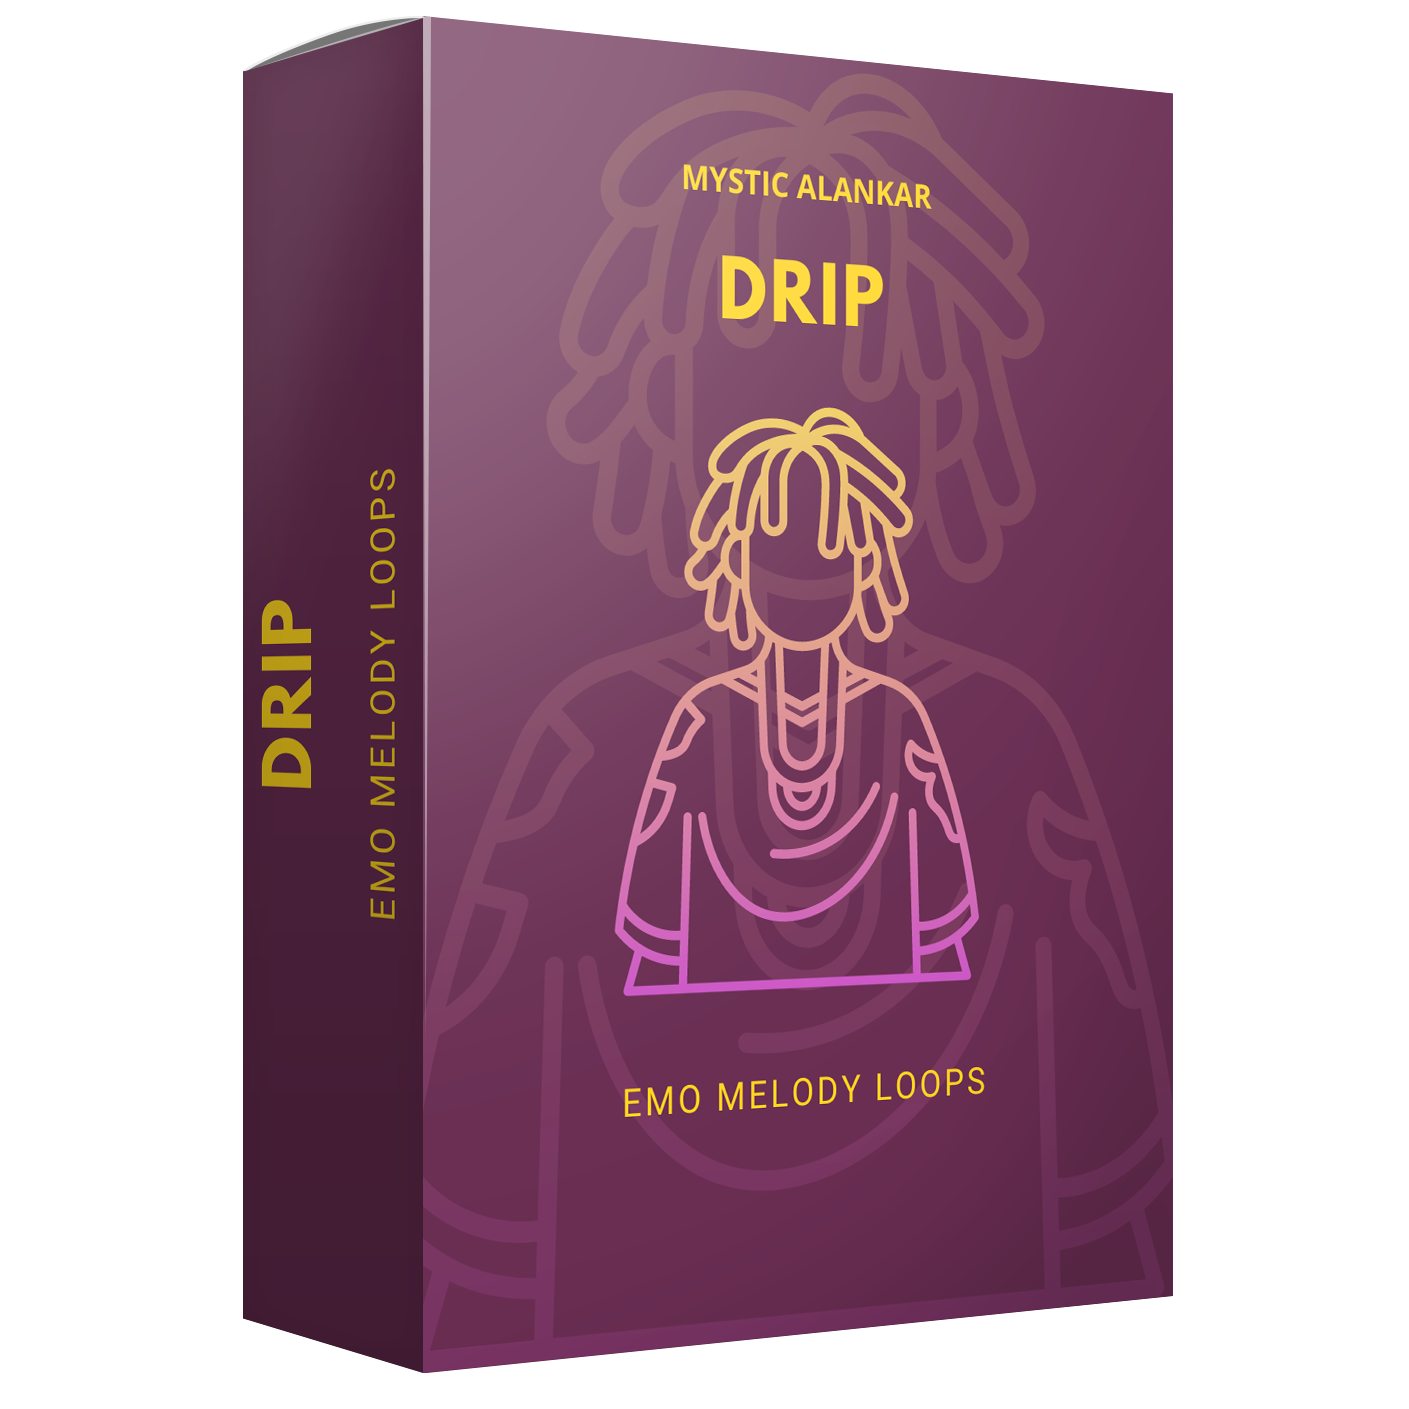 Drip - Emo Melody Loops